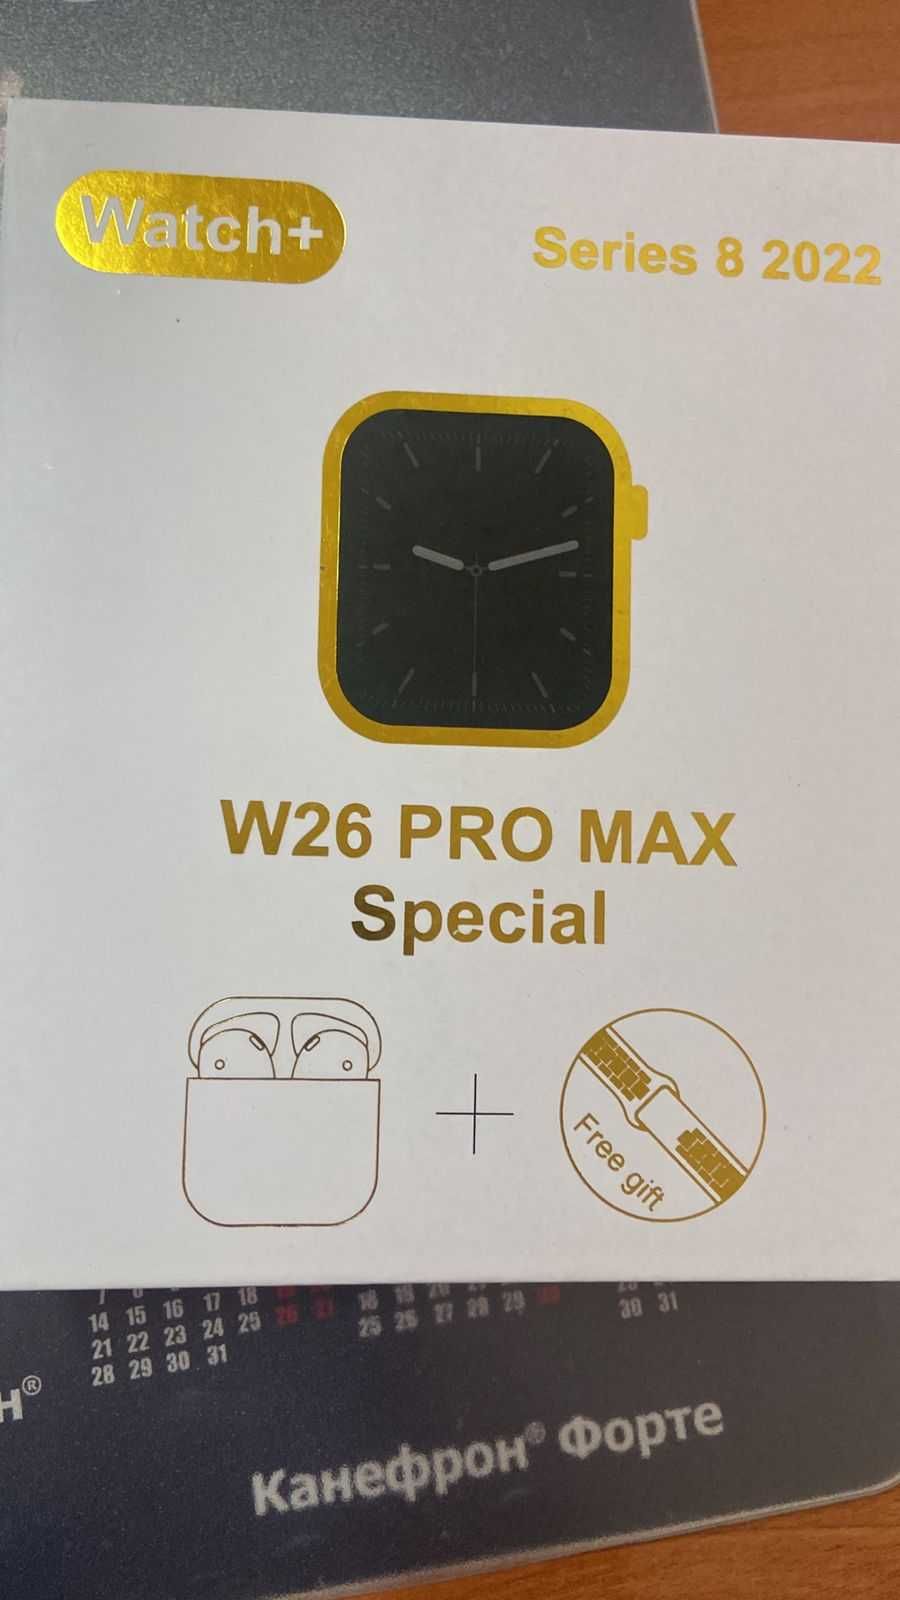 Продаетcя W26 PRO MAX Special. Series 8 2022 Комбо